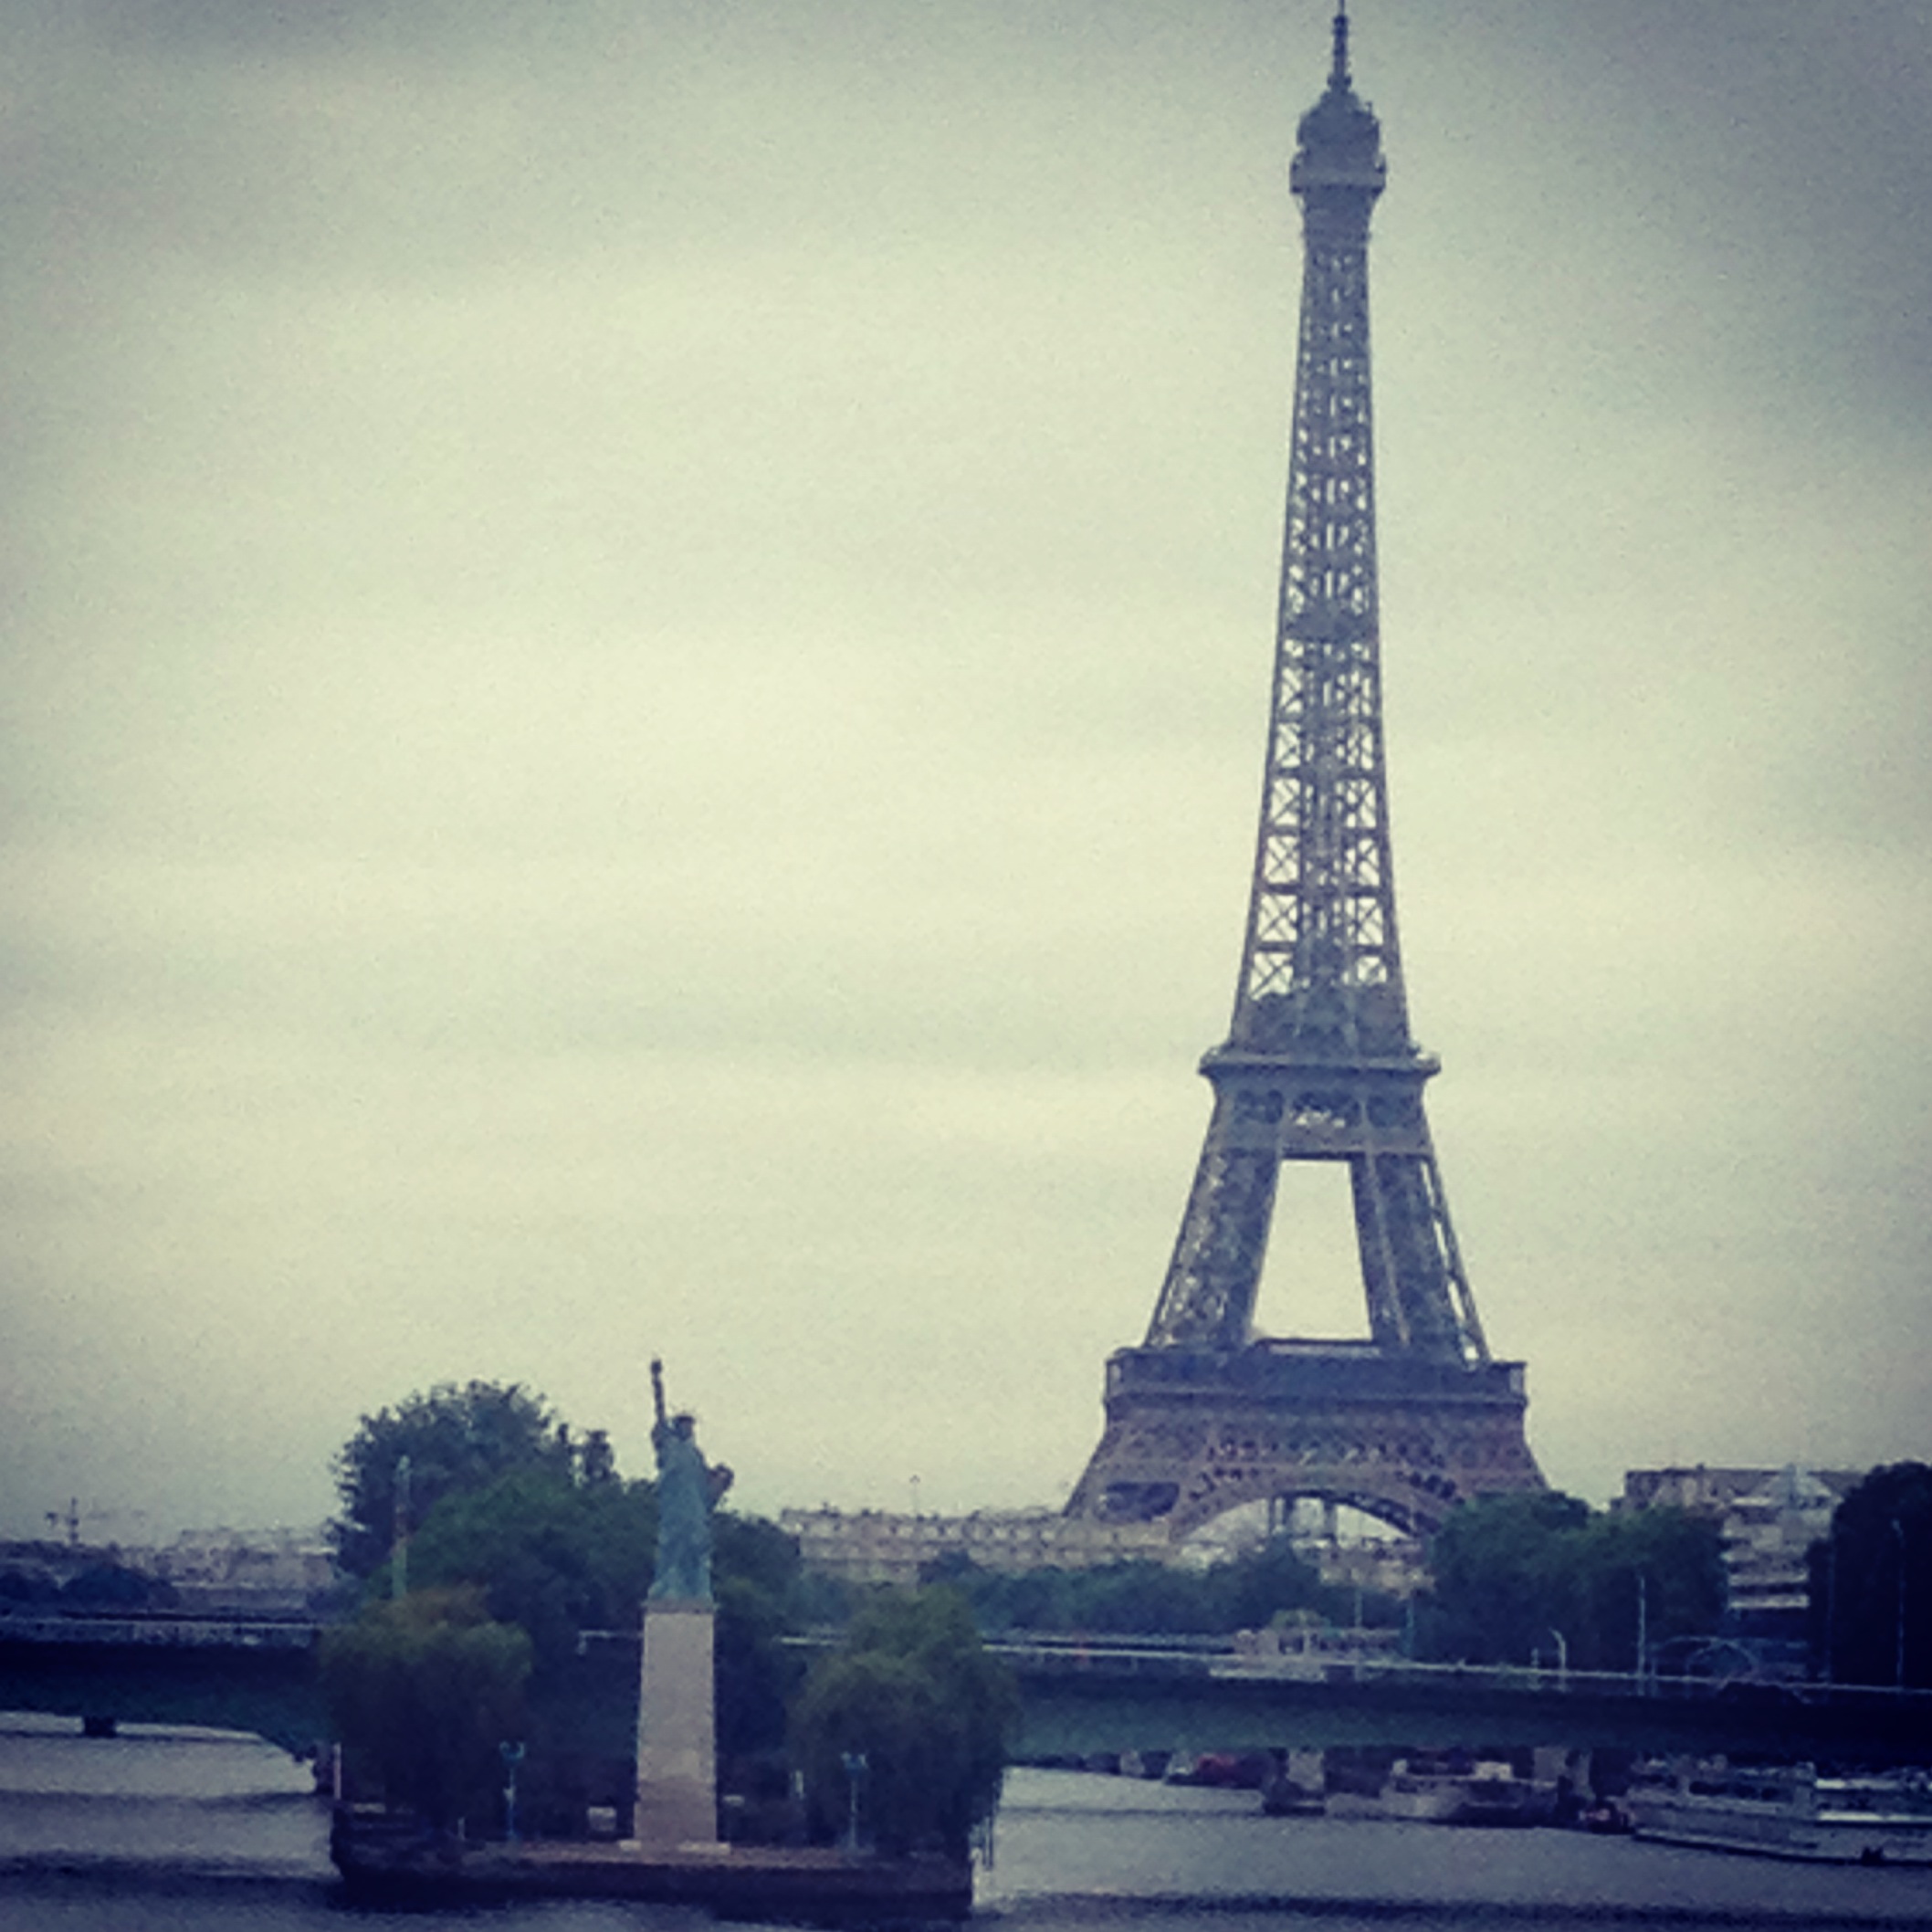 Paris Travel